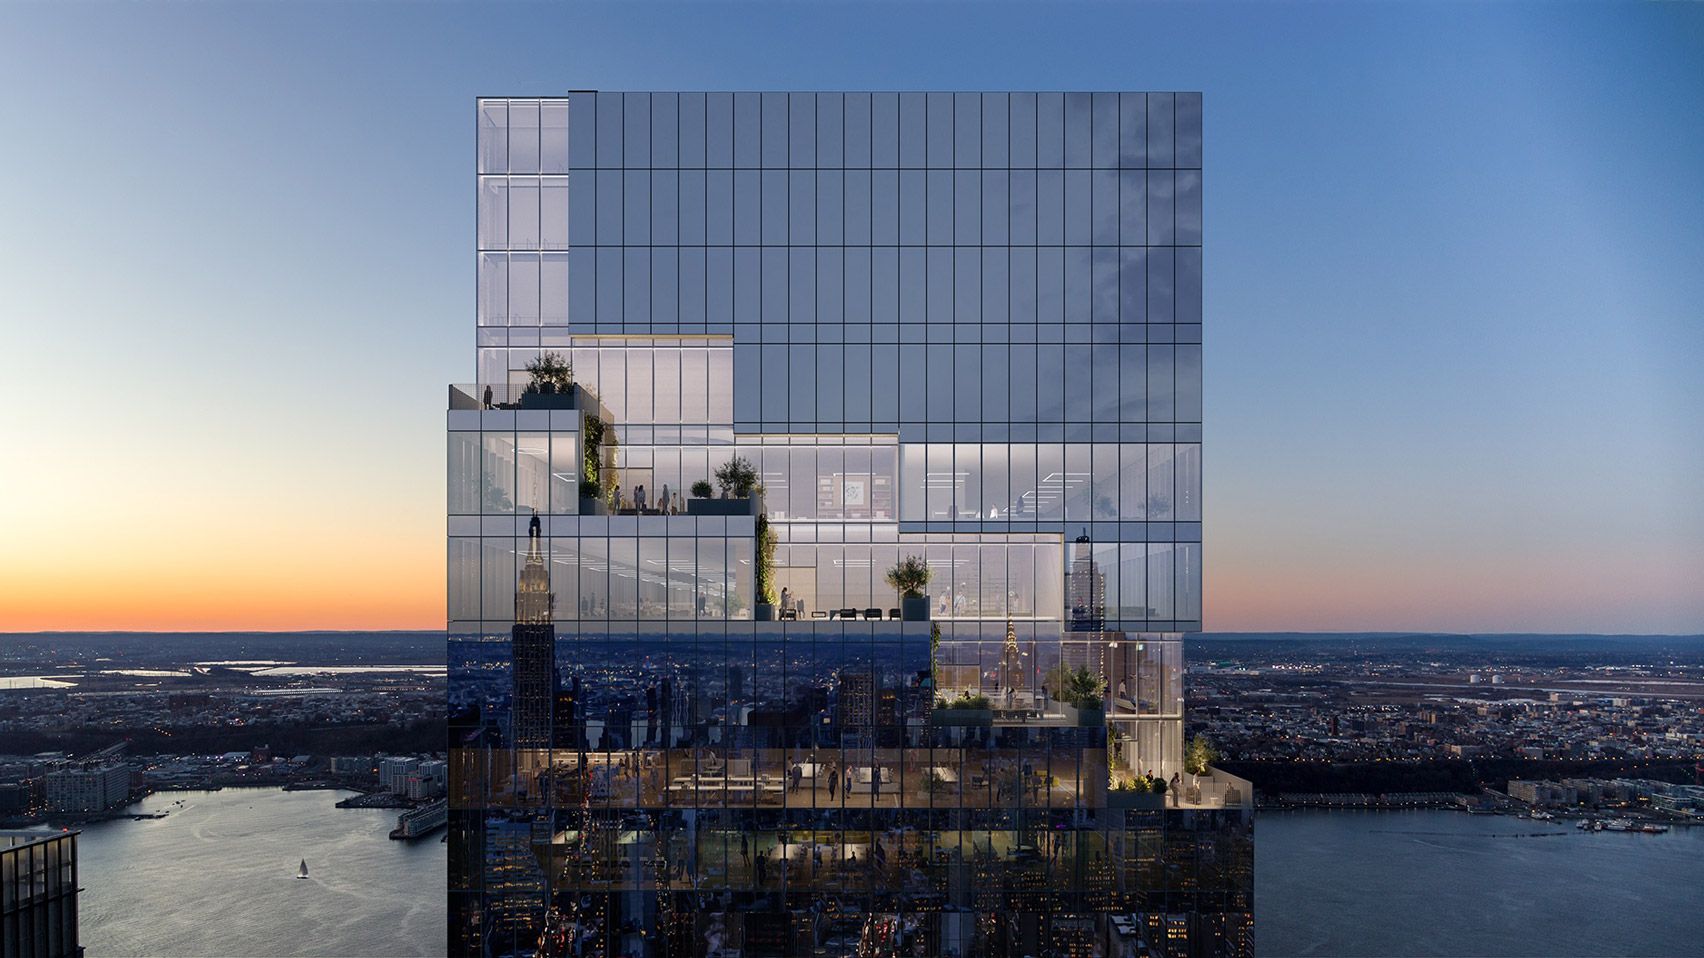 Епіцентр боротьби з вірусами: компанія Pfizer будує штаб-квартиру у Нью-Йорку – фото